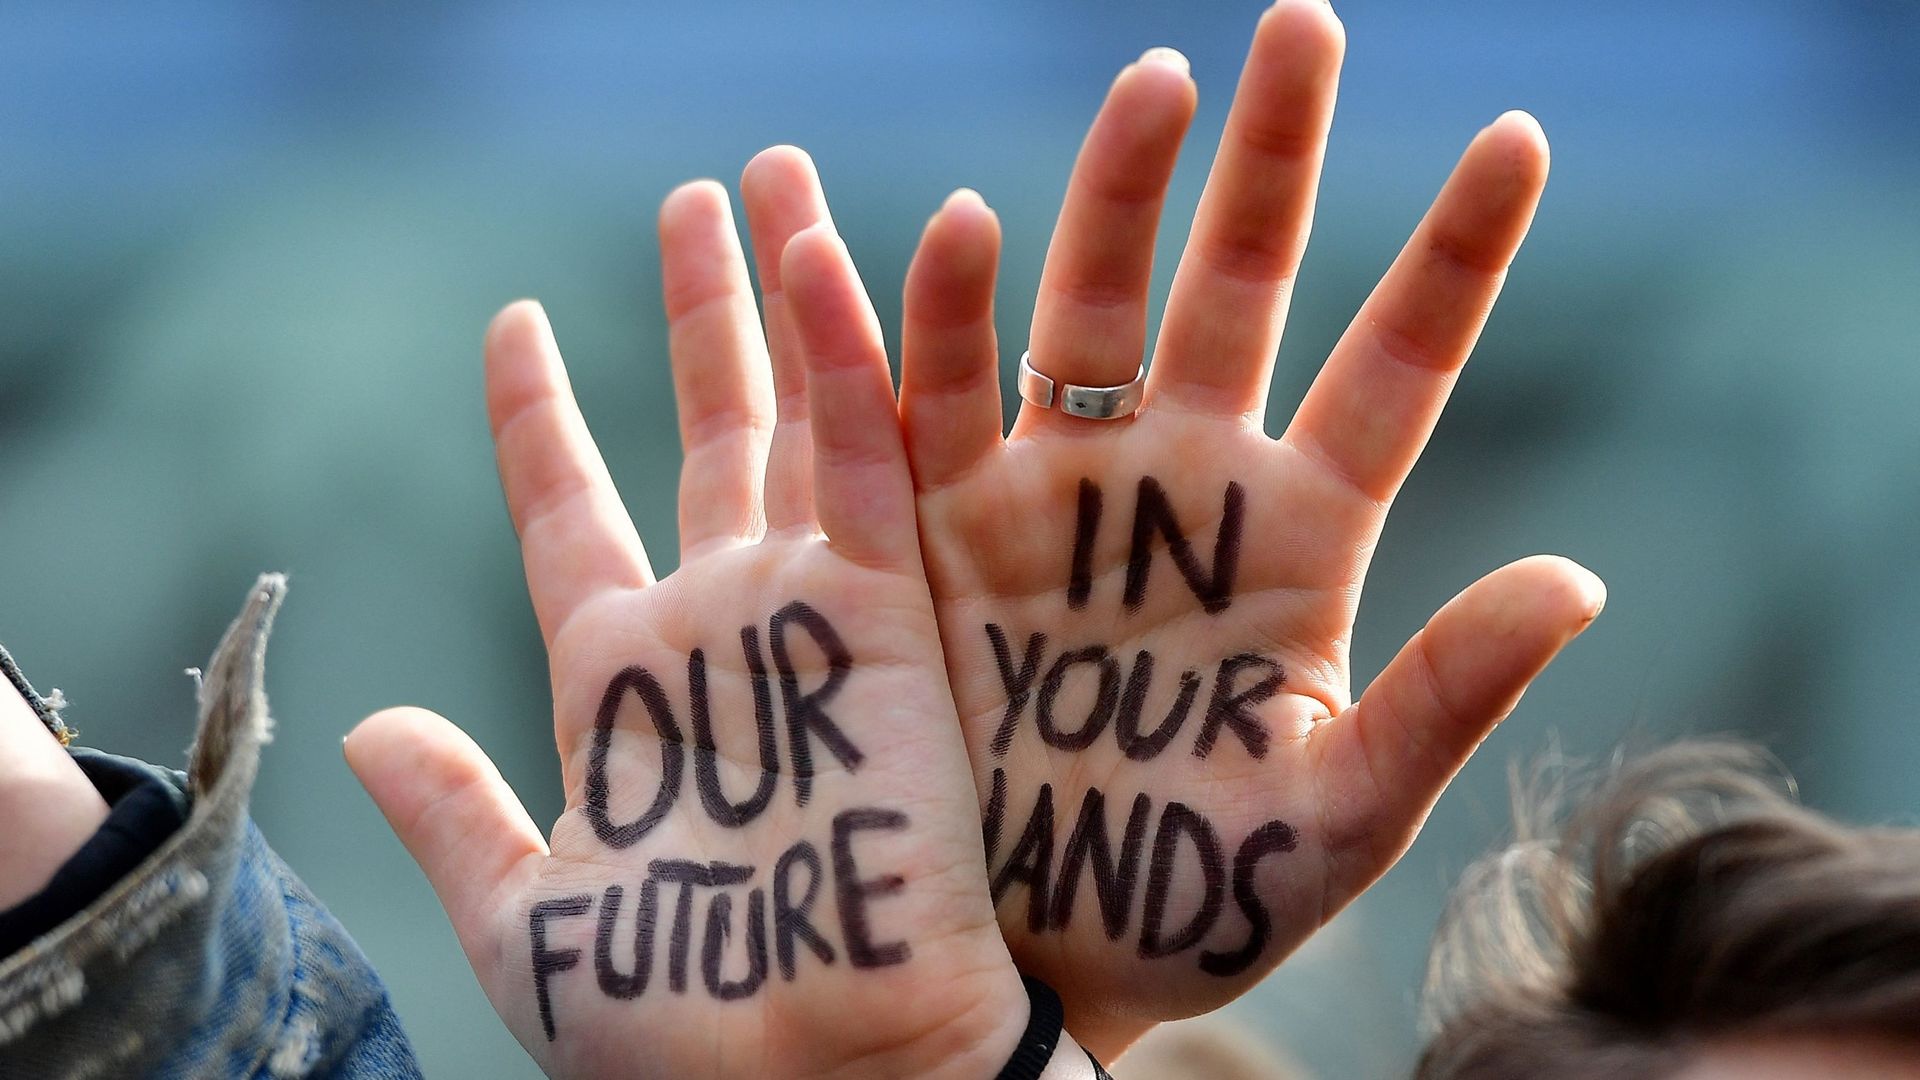 La Fédération WB s’engage à réduire ses émissions de gaz à effet de serre de 55% d’ici 2030. Photo prise lors de la marche des jeunes pour le climat, février 2019